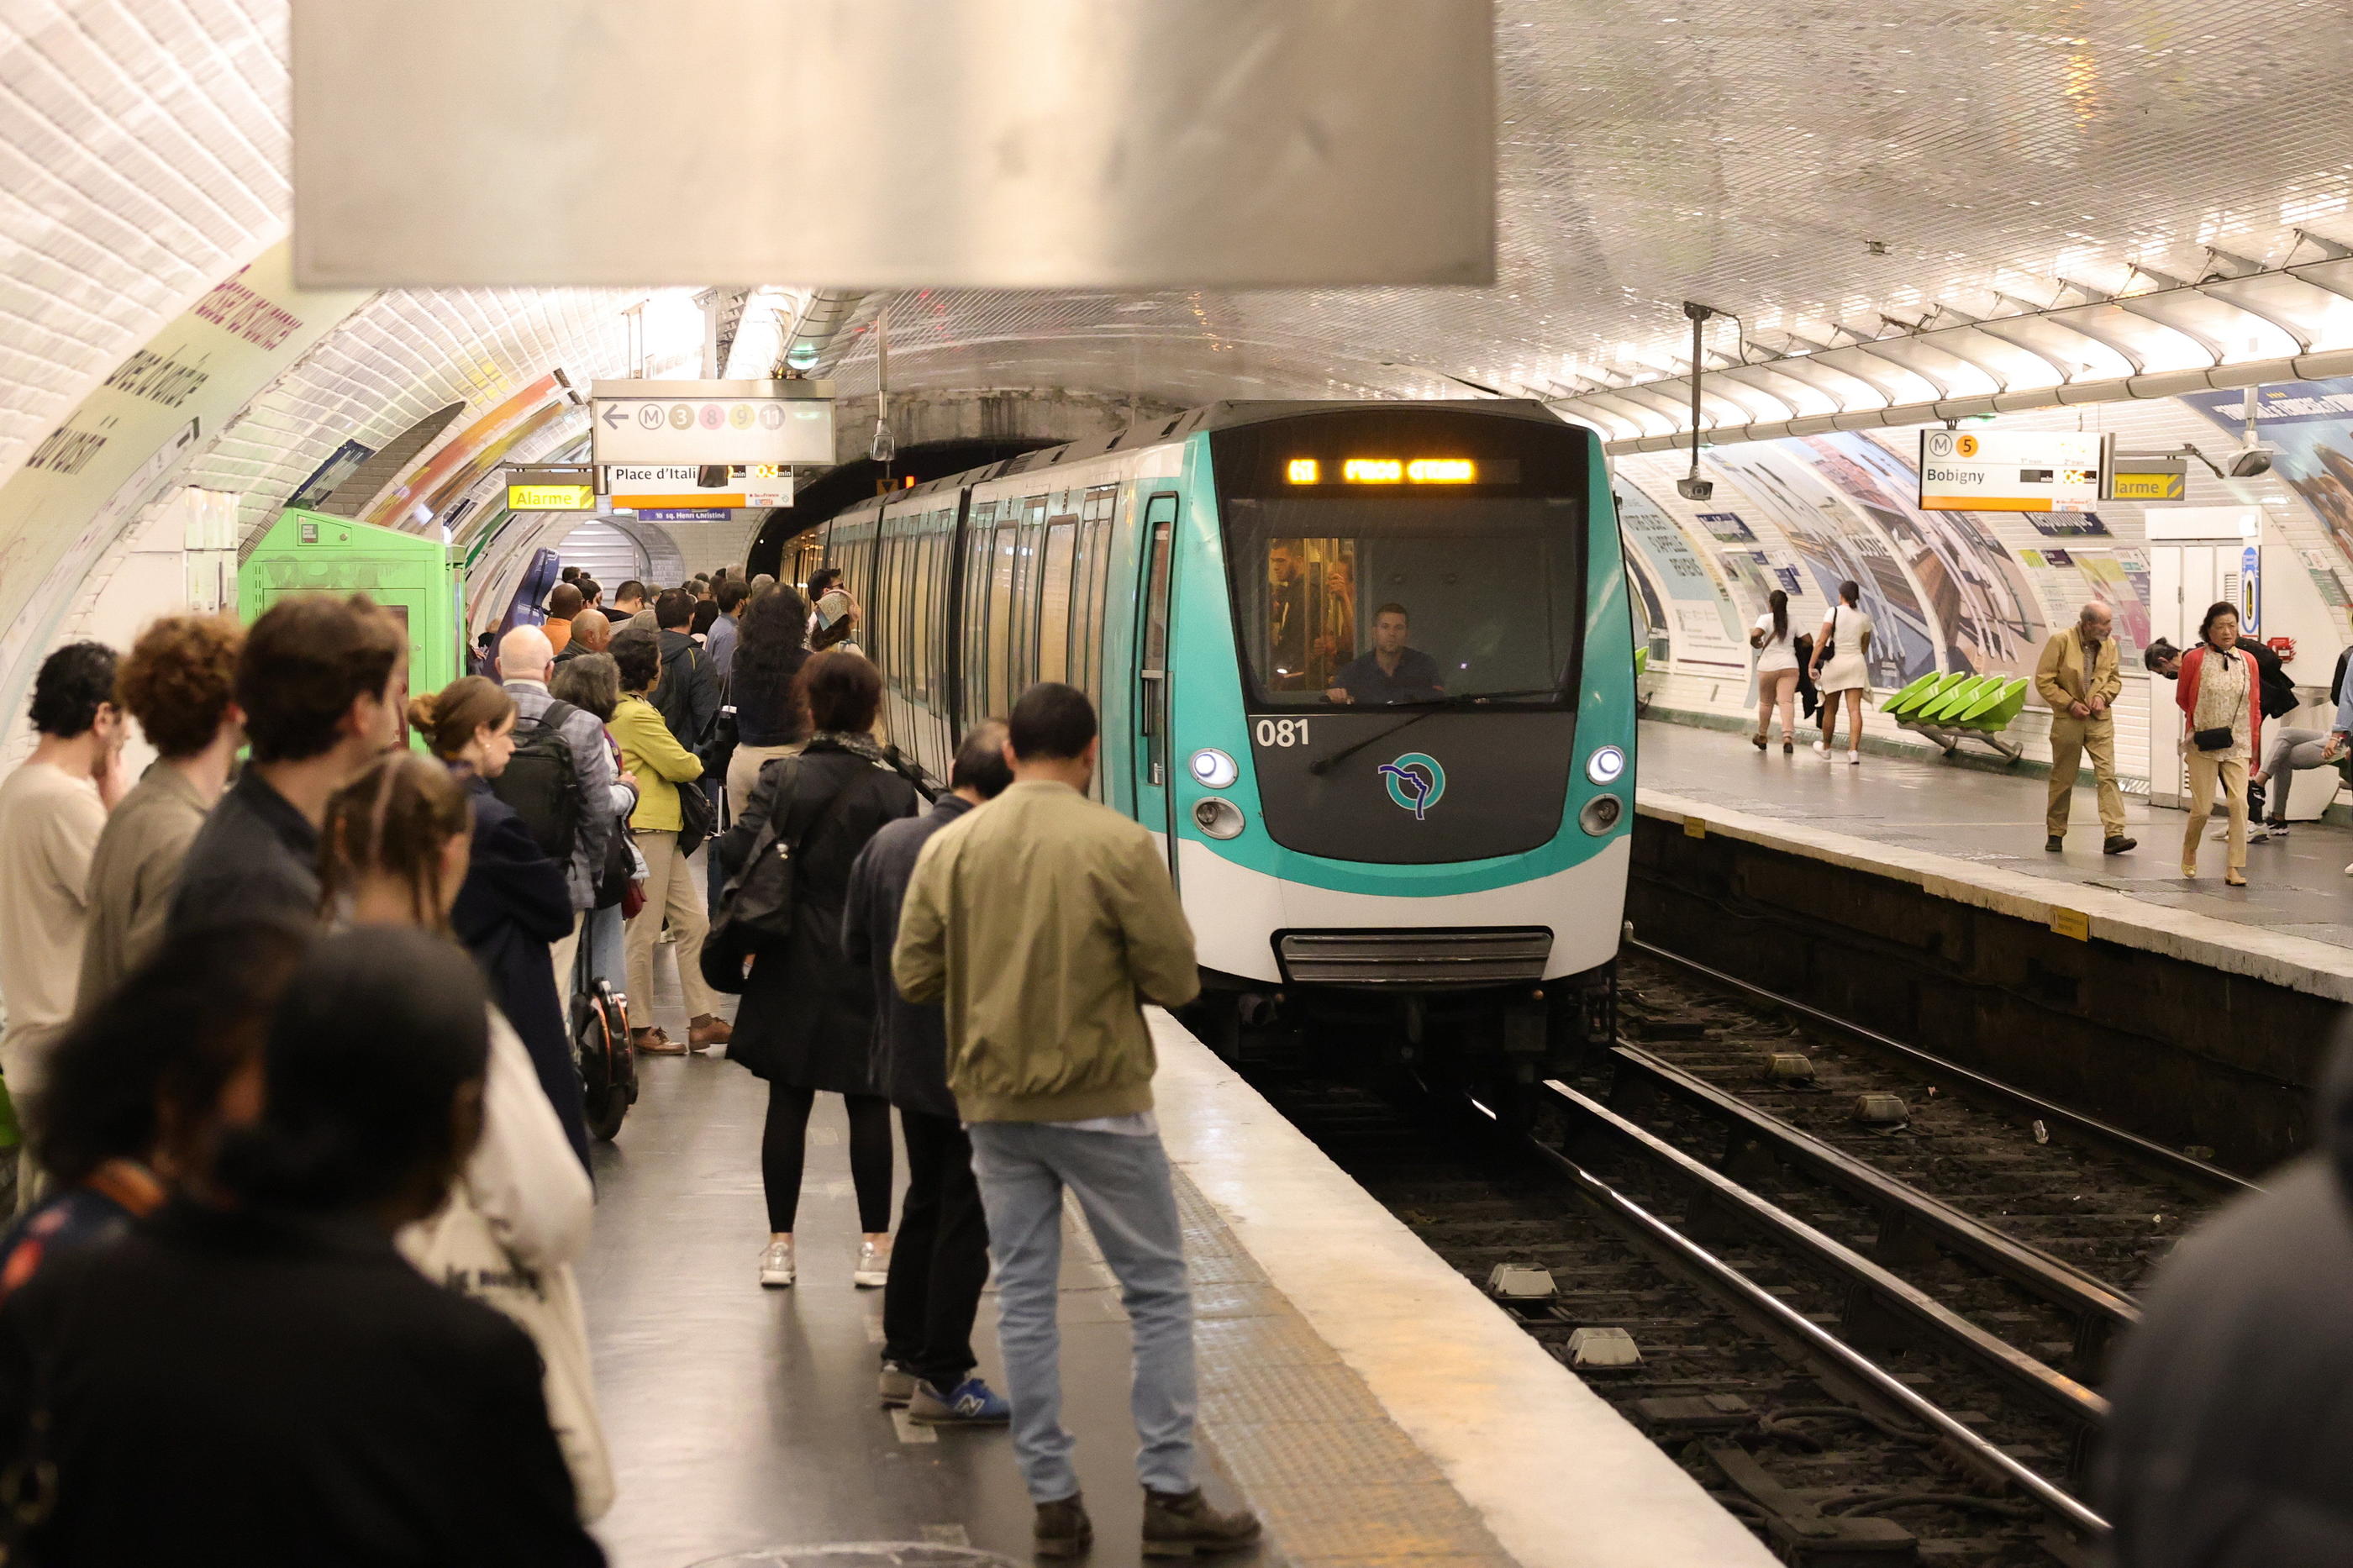 Le métro parisien s'apprête à recevoir 500 000 passagers par jour en plus pendant l'été olympique. LP/Olivier Arandel